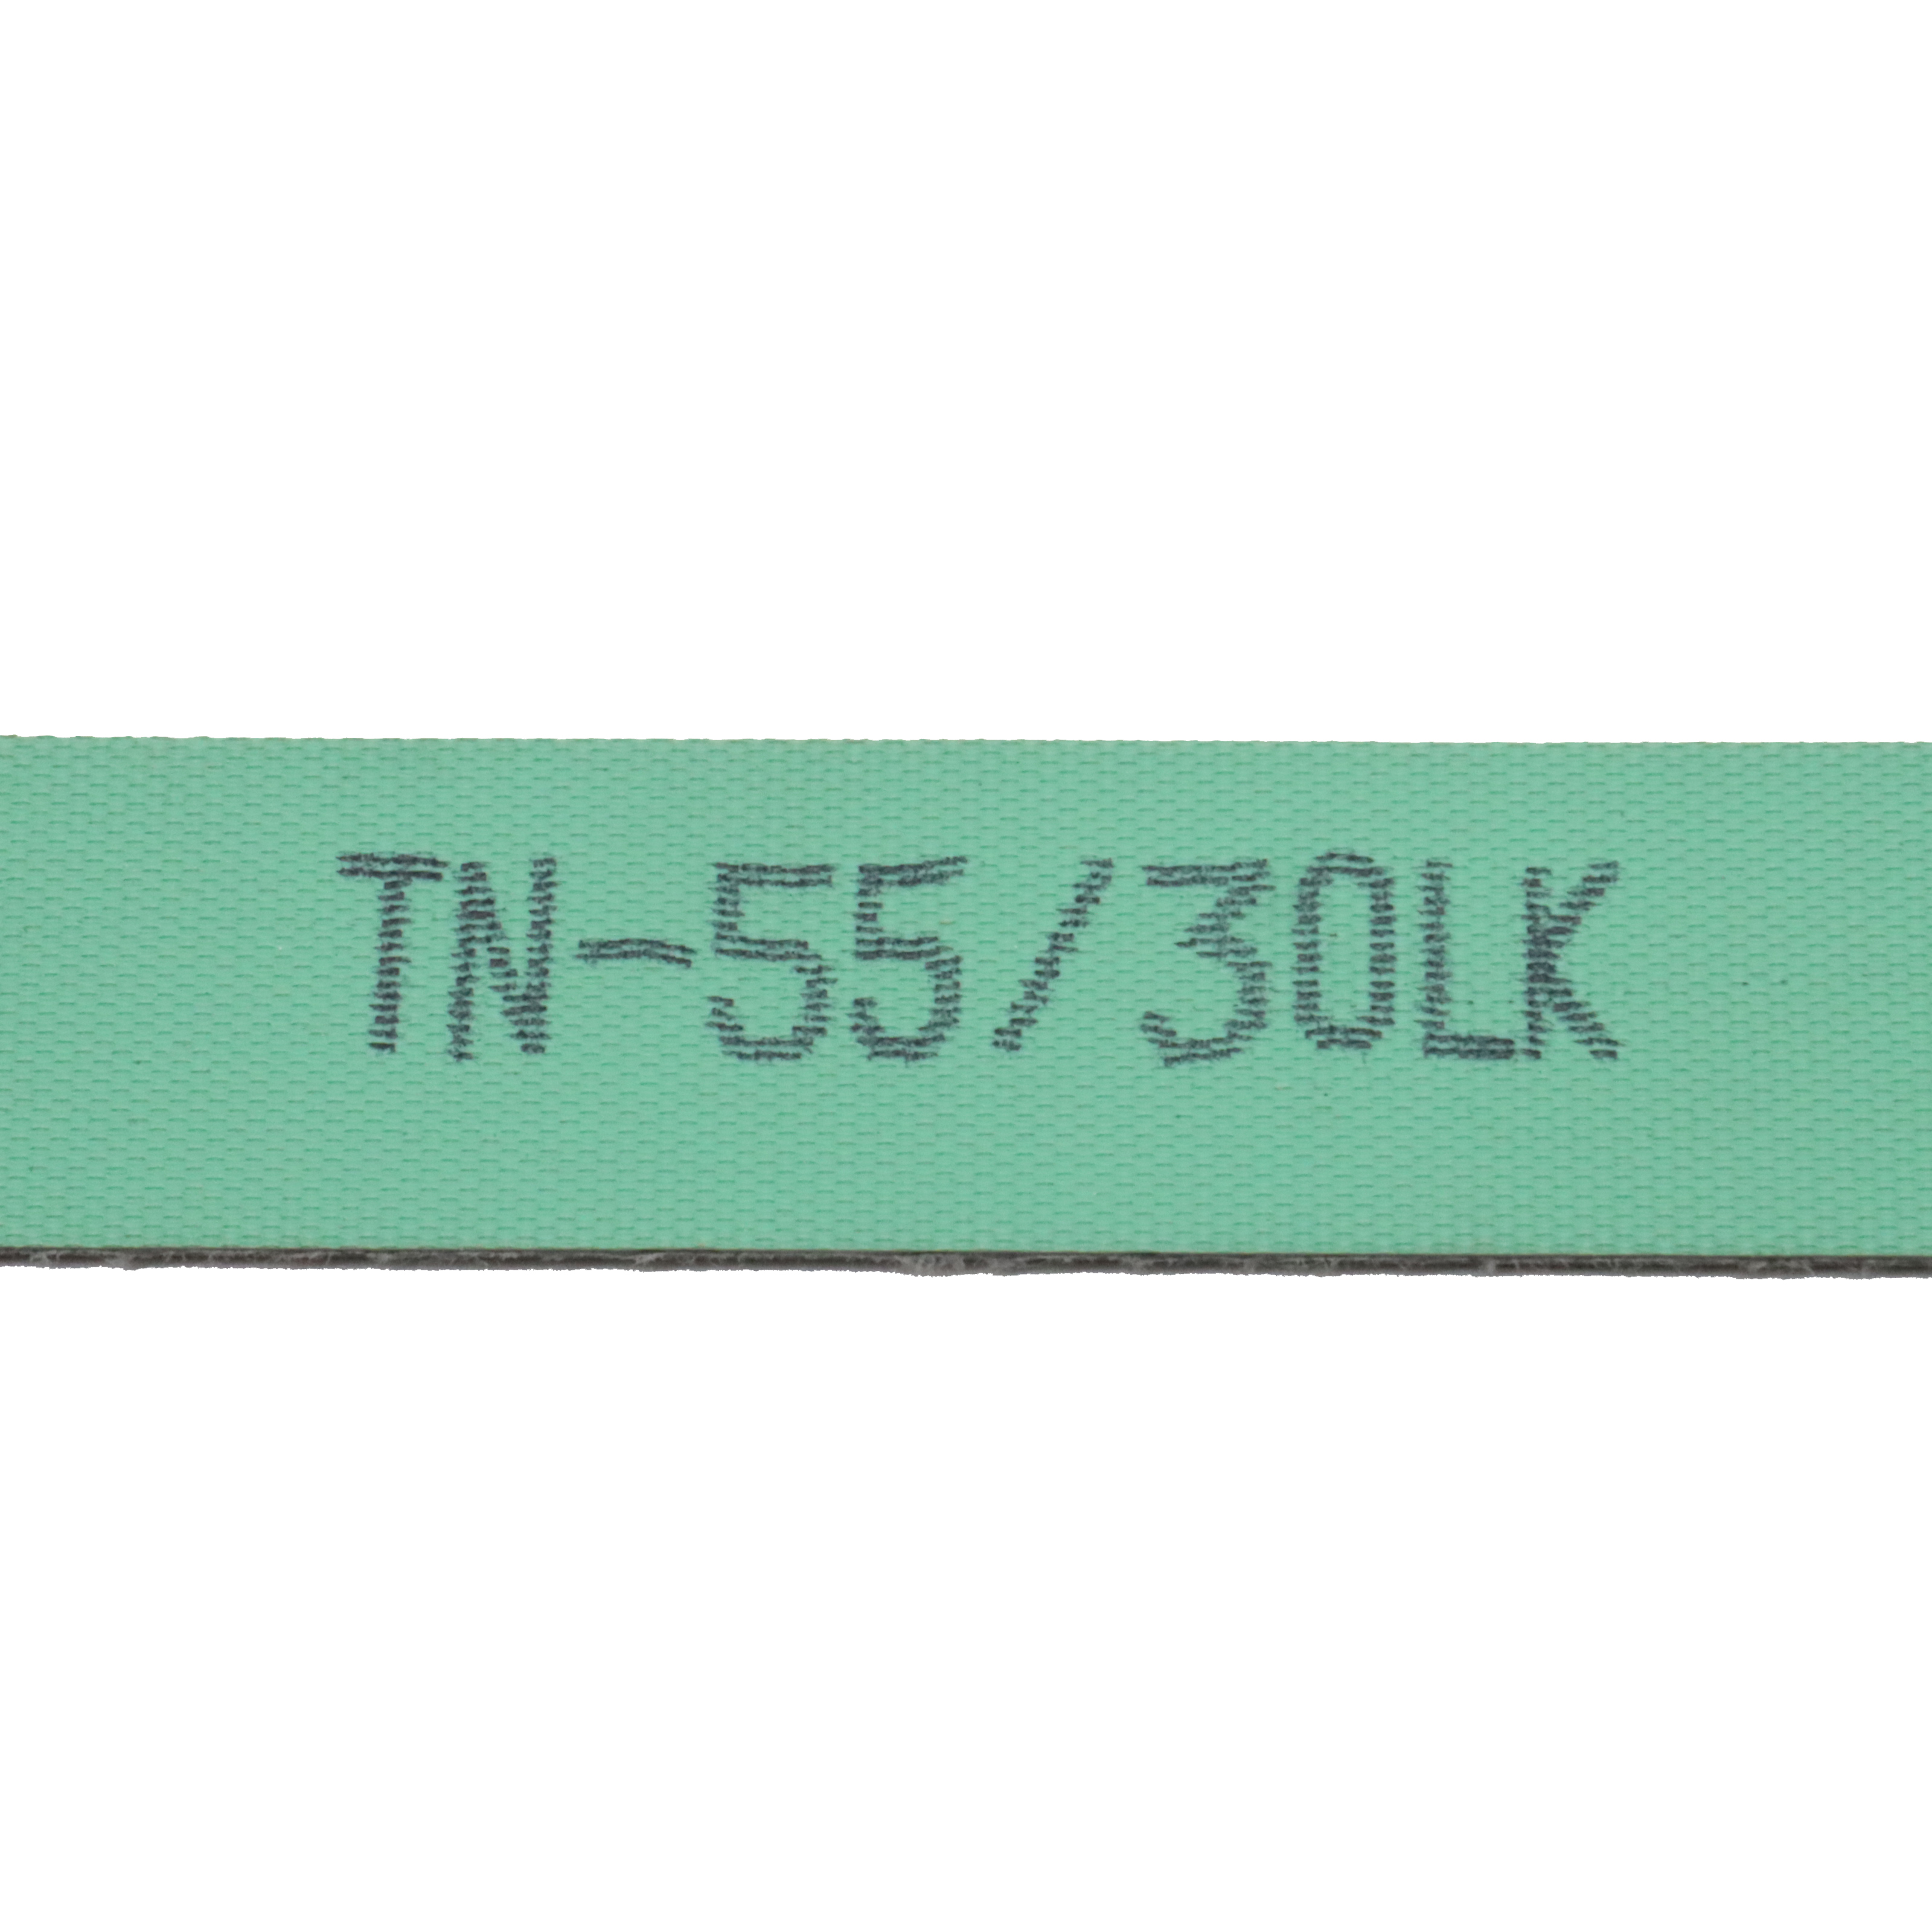 TN Series Flat Belts